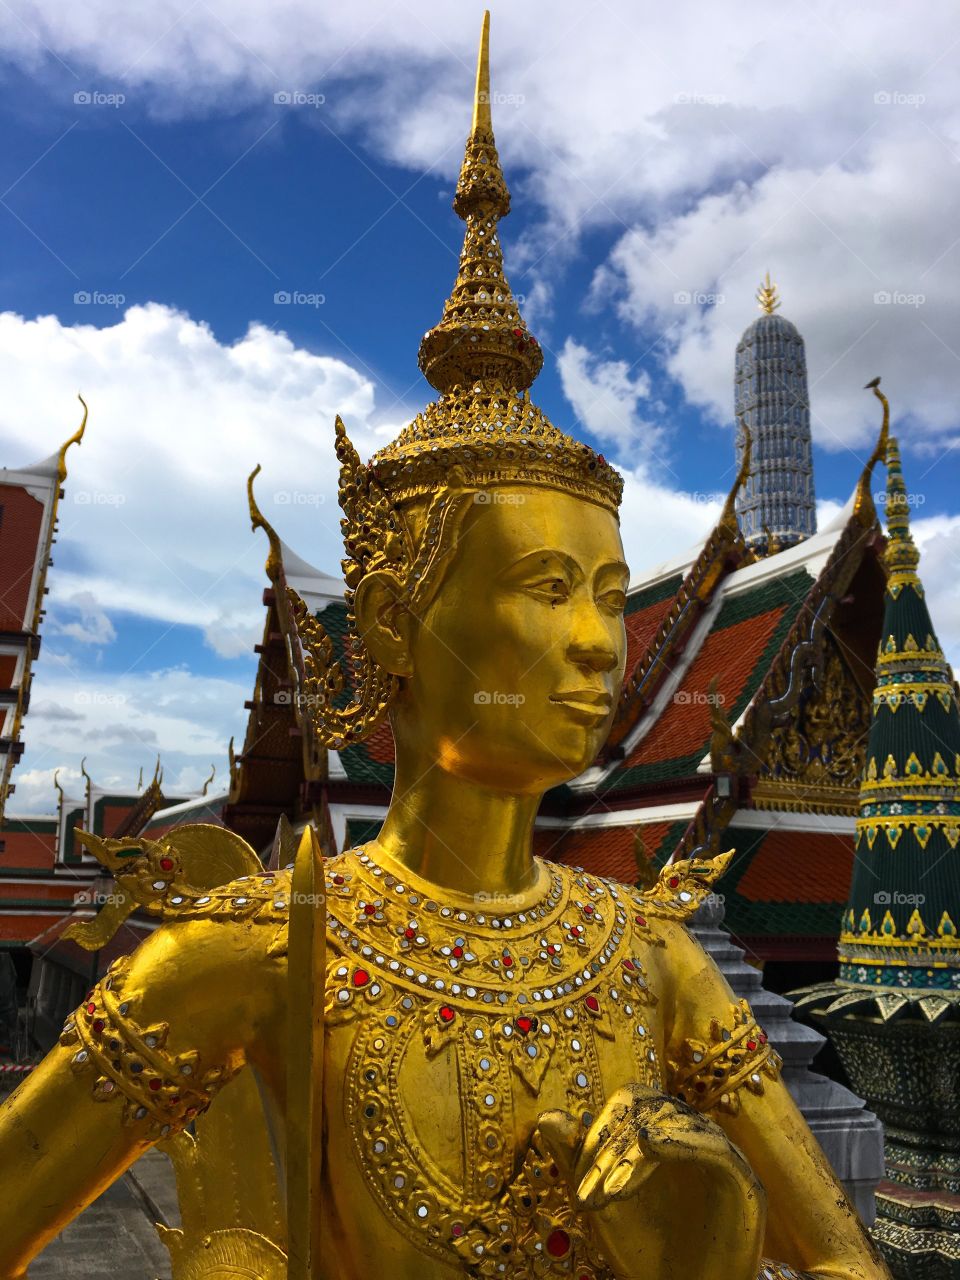 Grand Palace / Bangkok Thailand 57